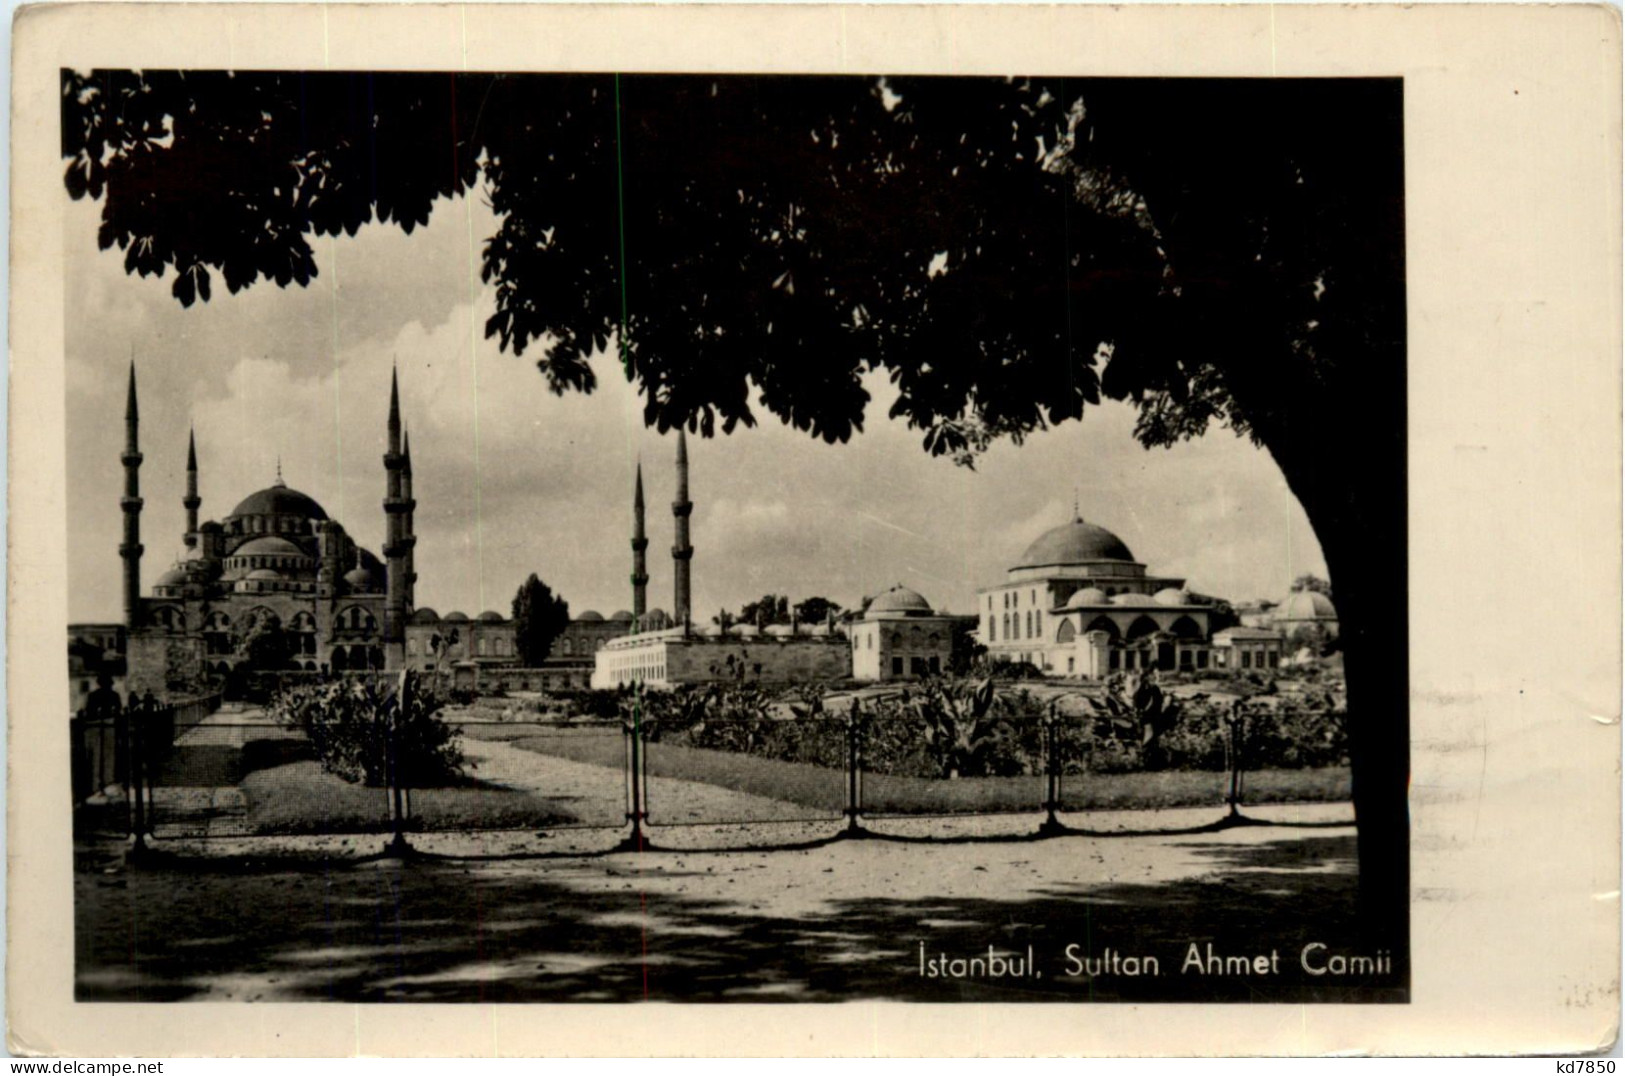 Istanbul - Sultan Ahmet Camii - Turkey